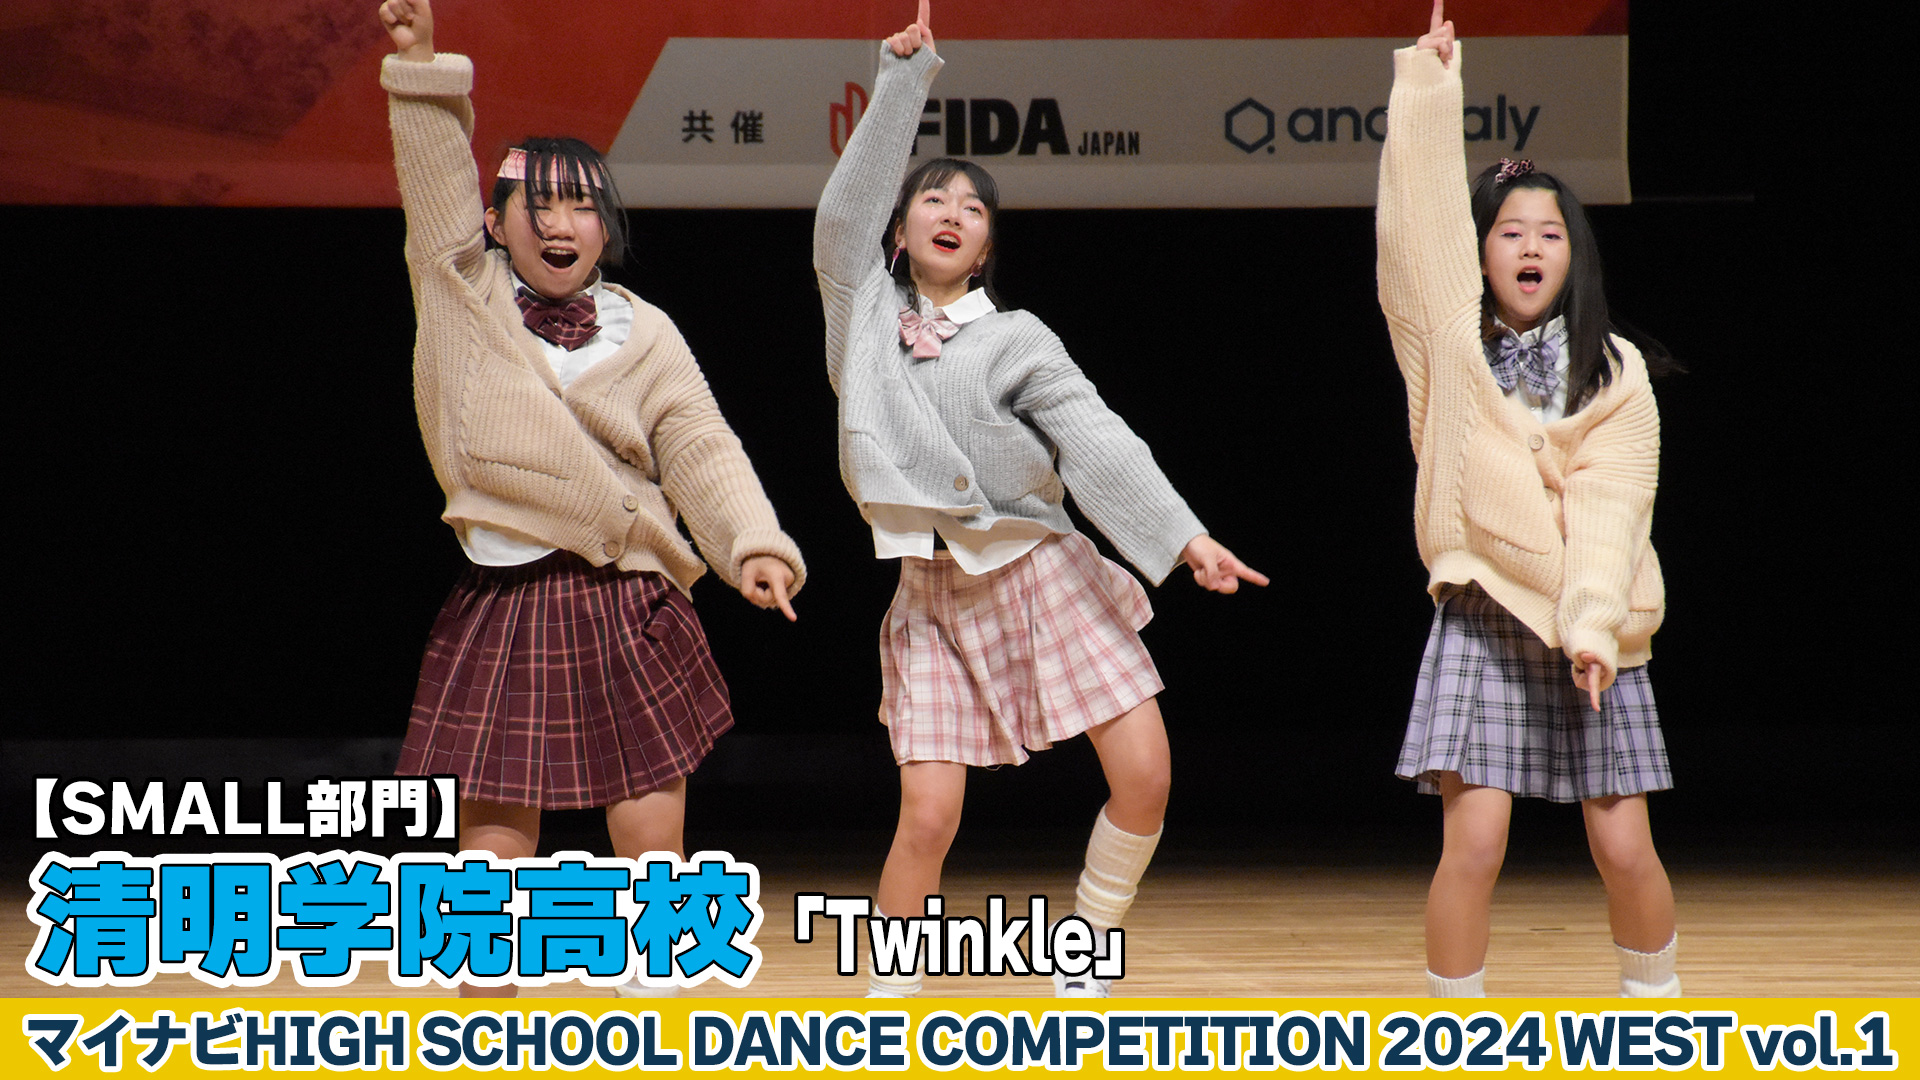 【動画】清明学院高校「Twinkle」がSMALL部門で演技を披露！＜マイナビHIGH SCHOOL DANCE COMPETITION 2024 WEST vol.2＞